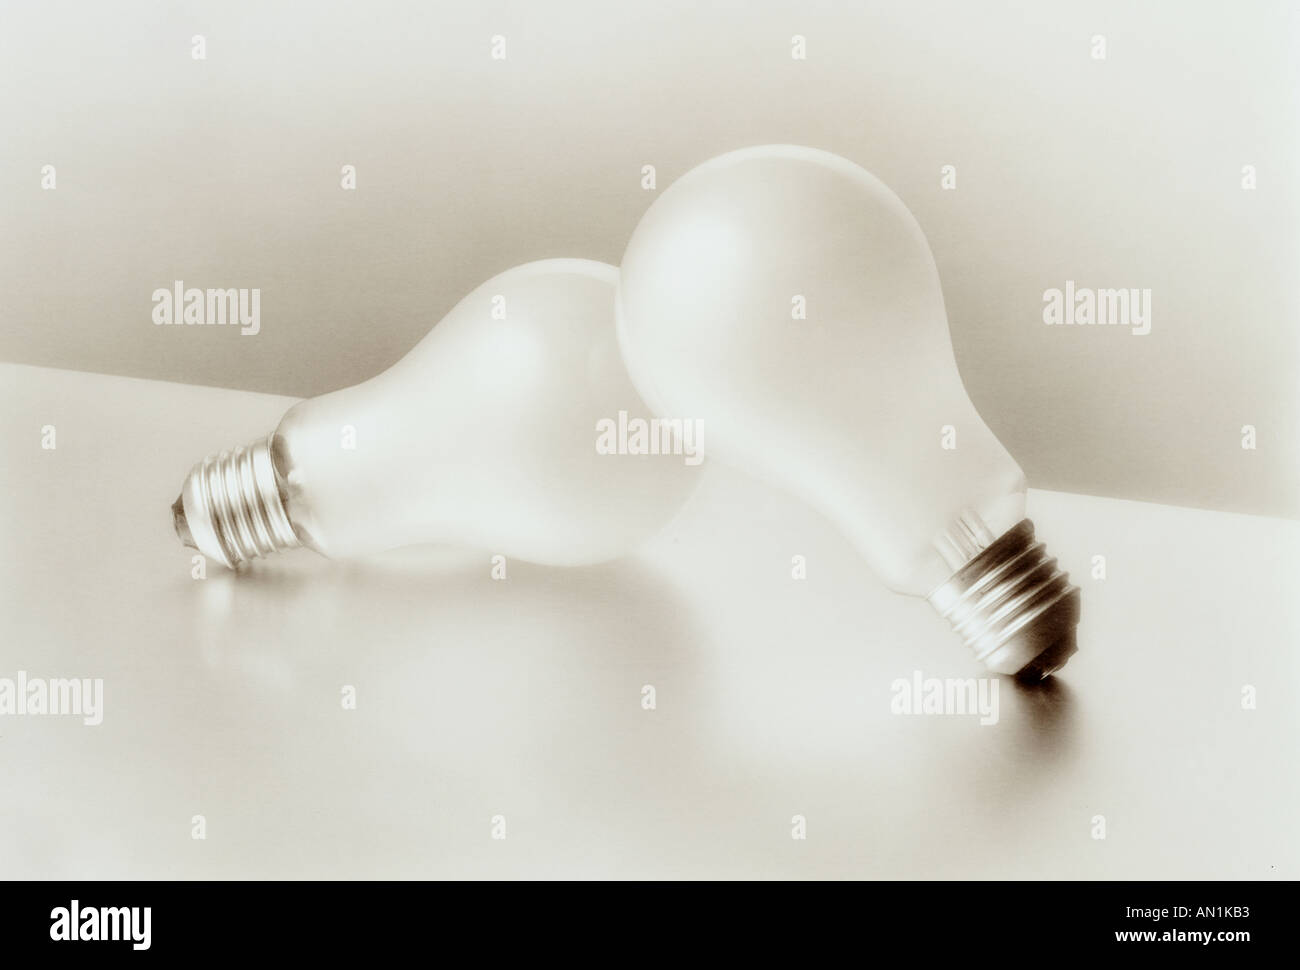 Elektrische Glühbirnen mit Schraubverschluss Armaturen Stockfoto